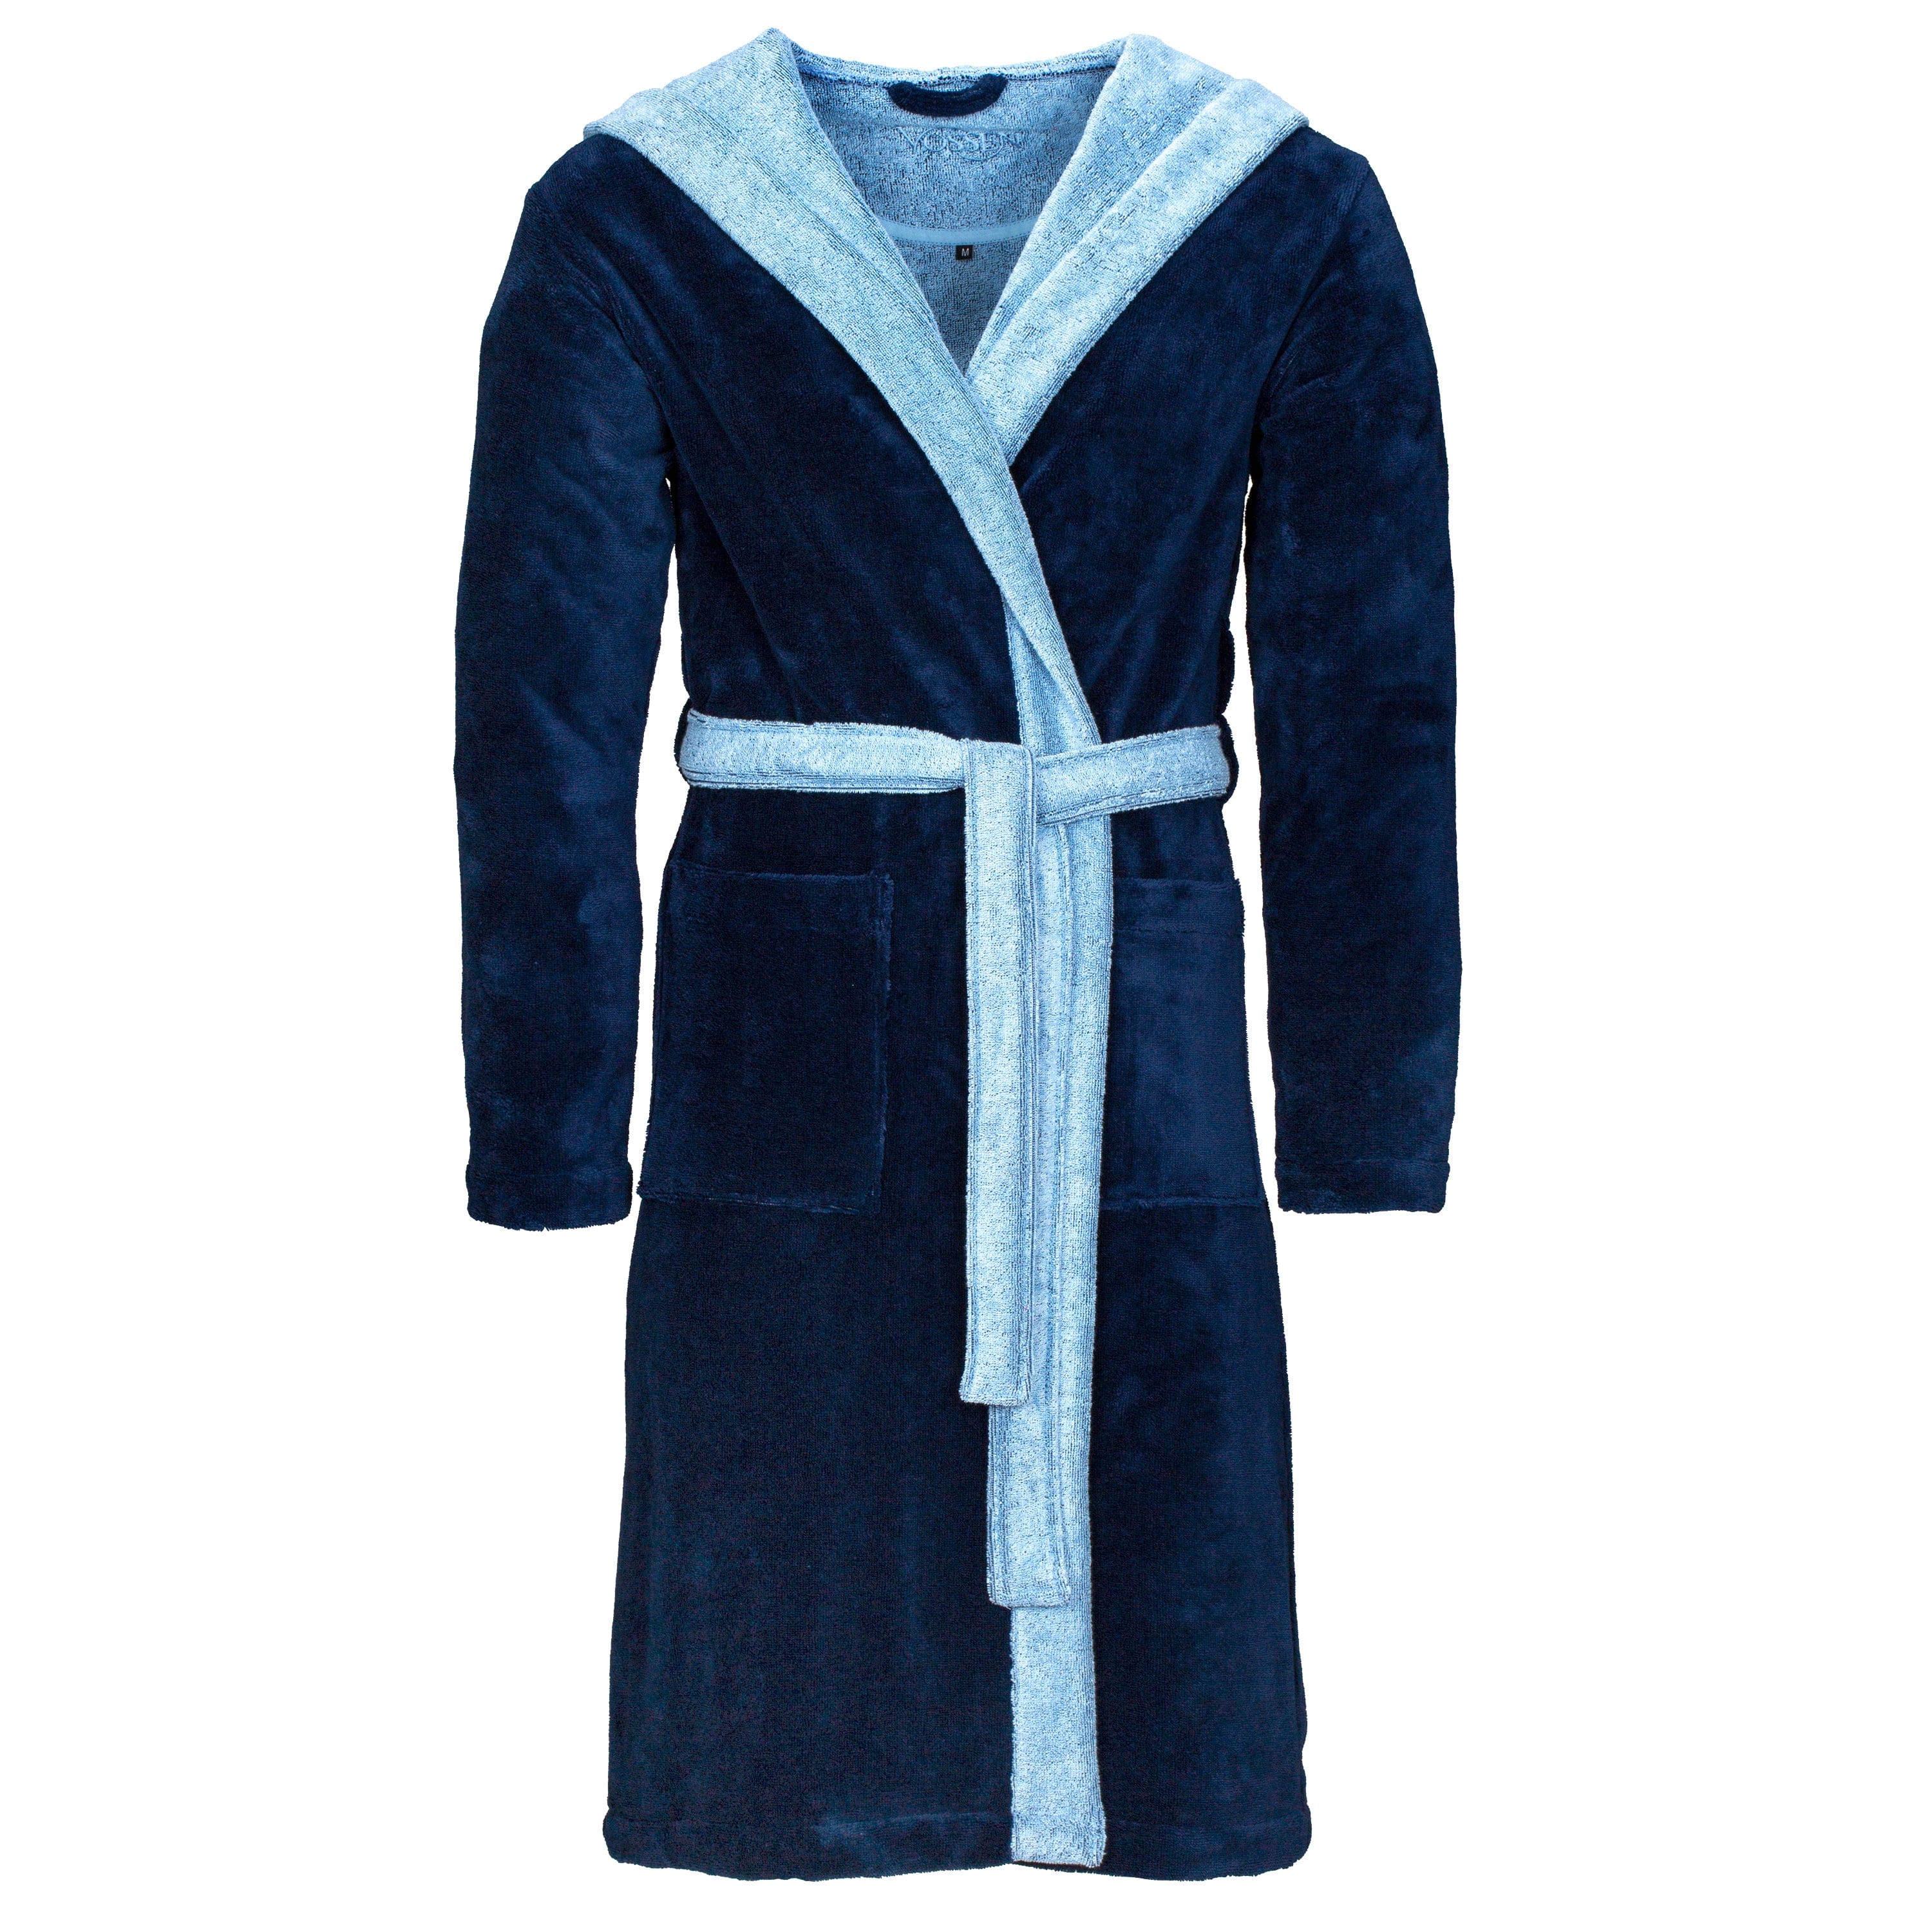 Accappatoio in cotone vegano con cintura e cappuccio in un doppio colore azzurro e blu per uomo e donna